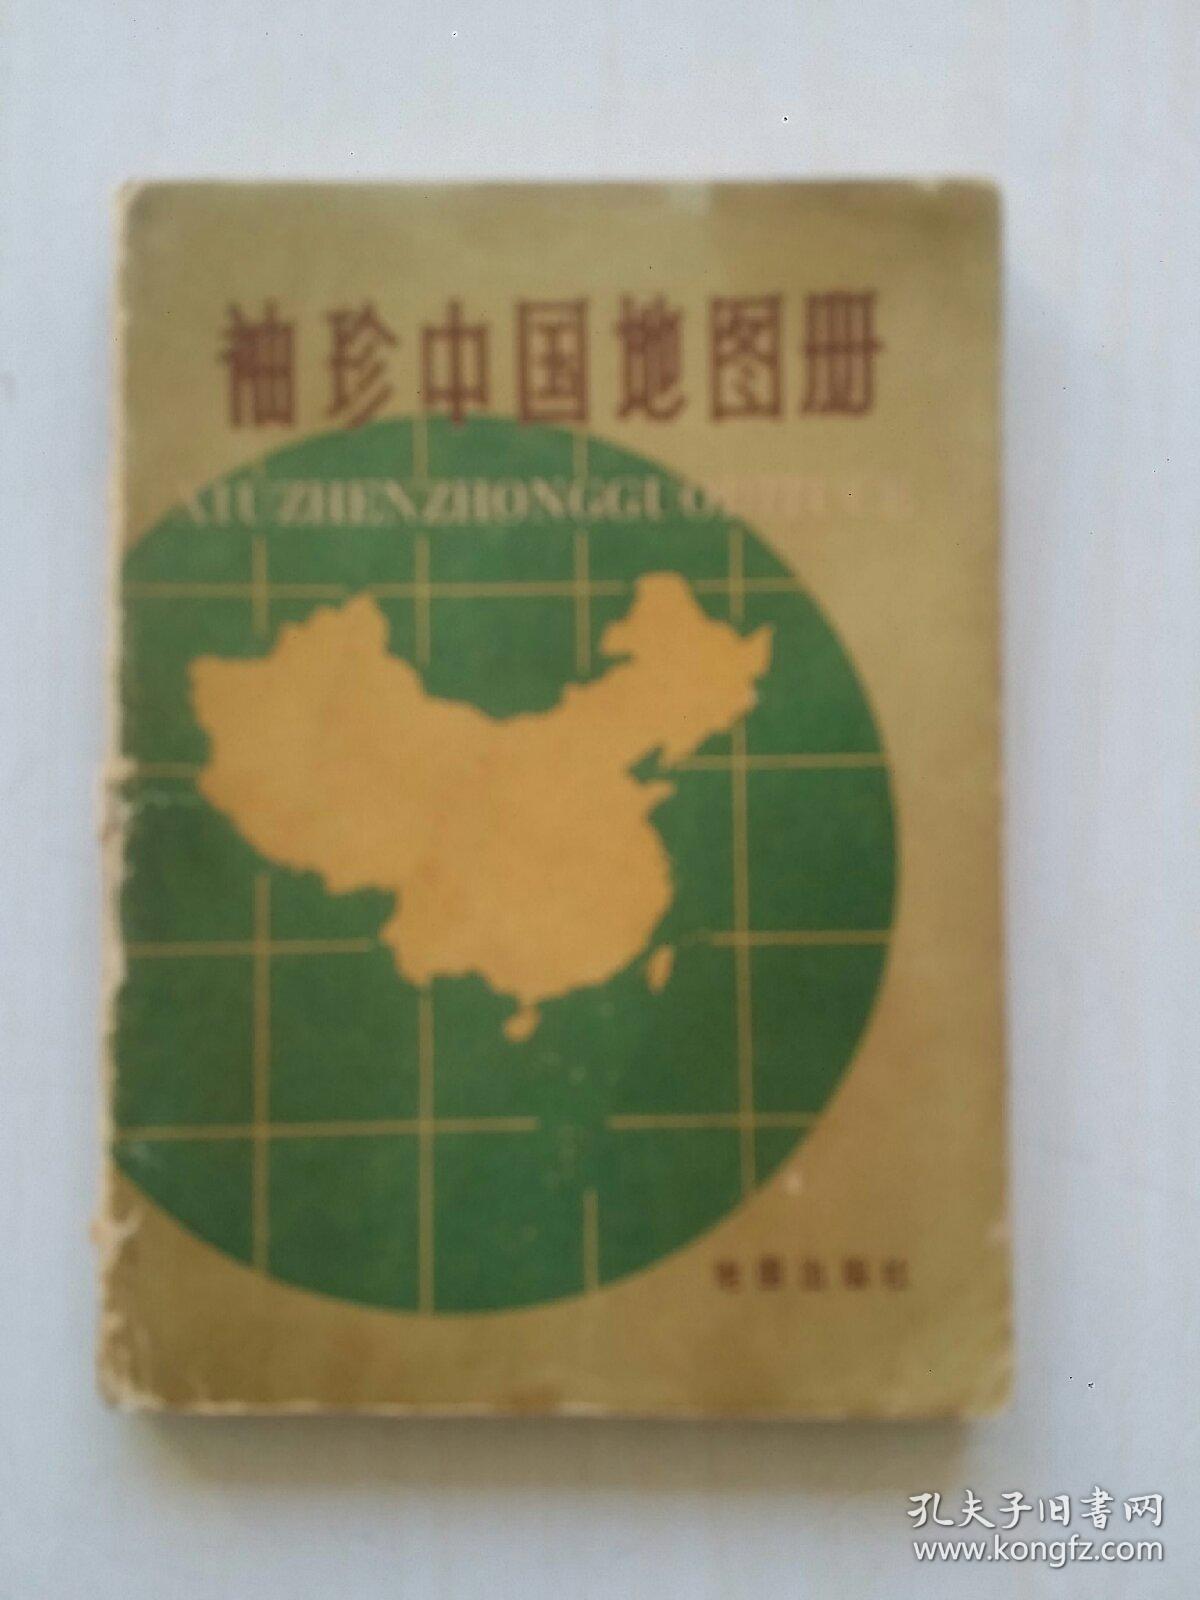 袖珍中国地图册 中国地图出版社编制 1987年版 64开本[包邮]